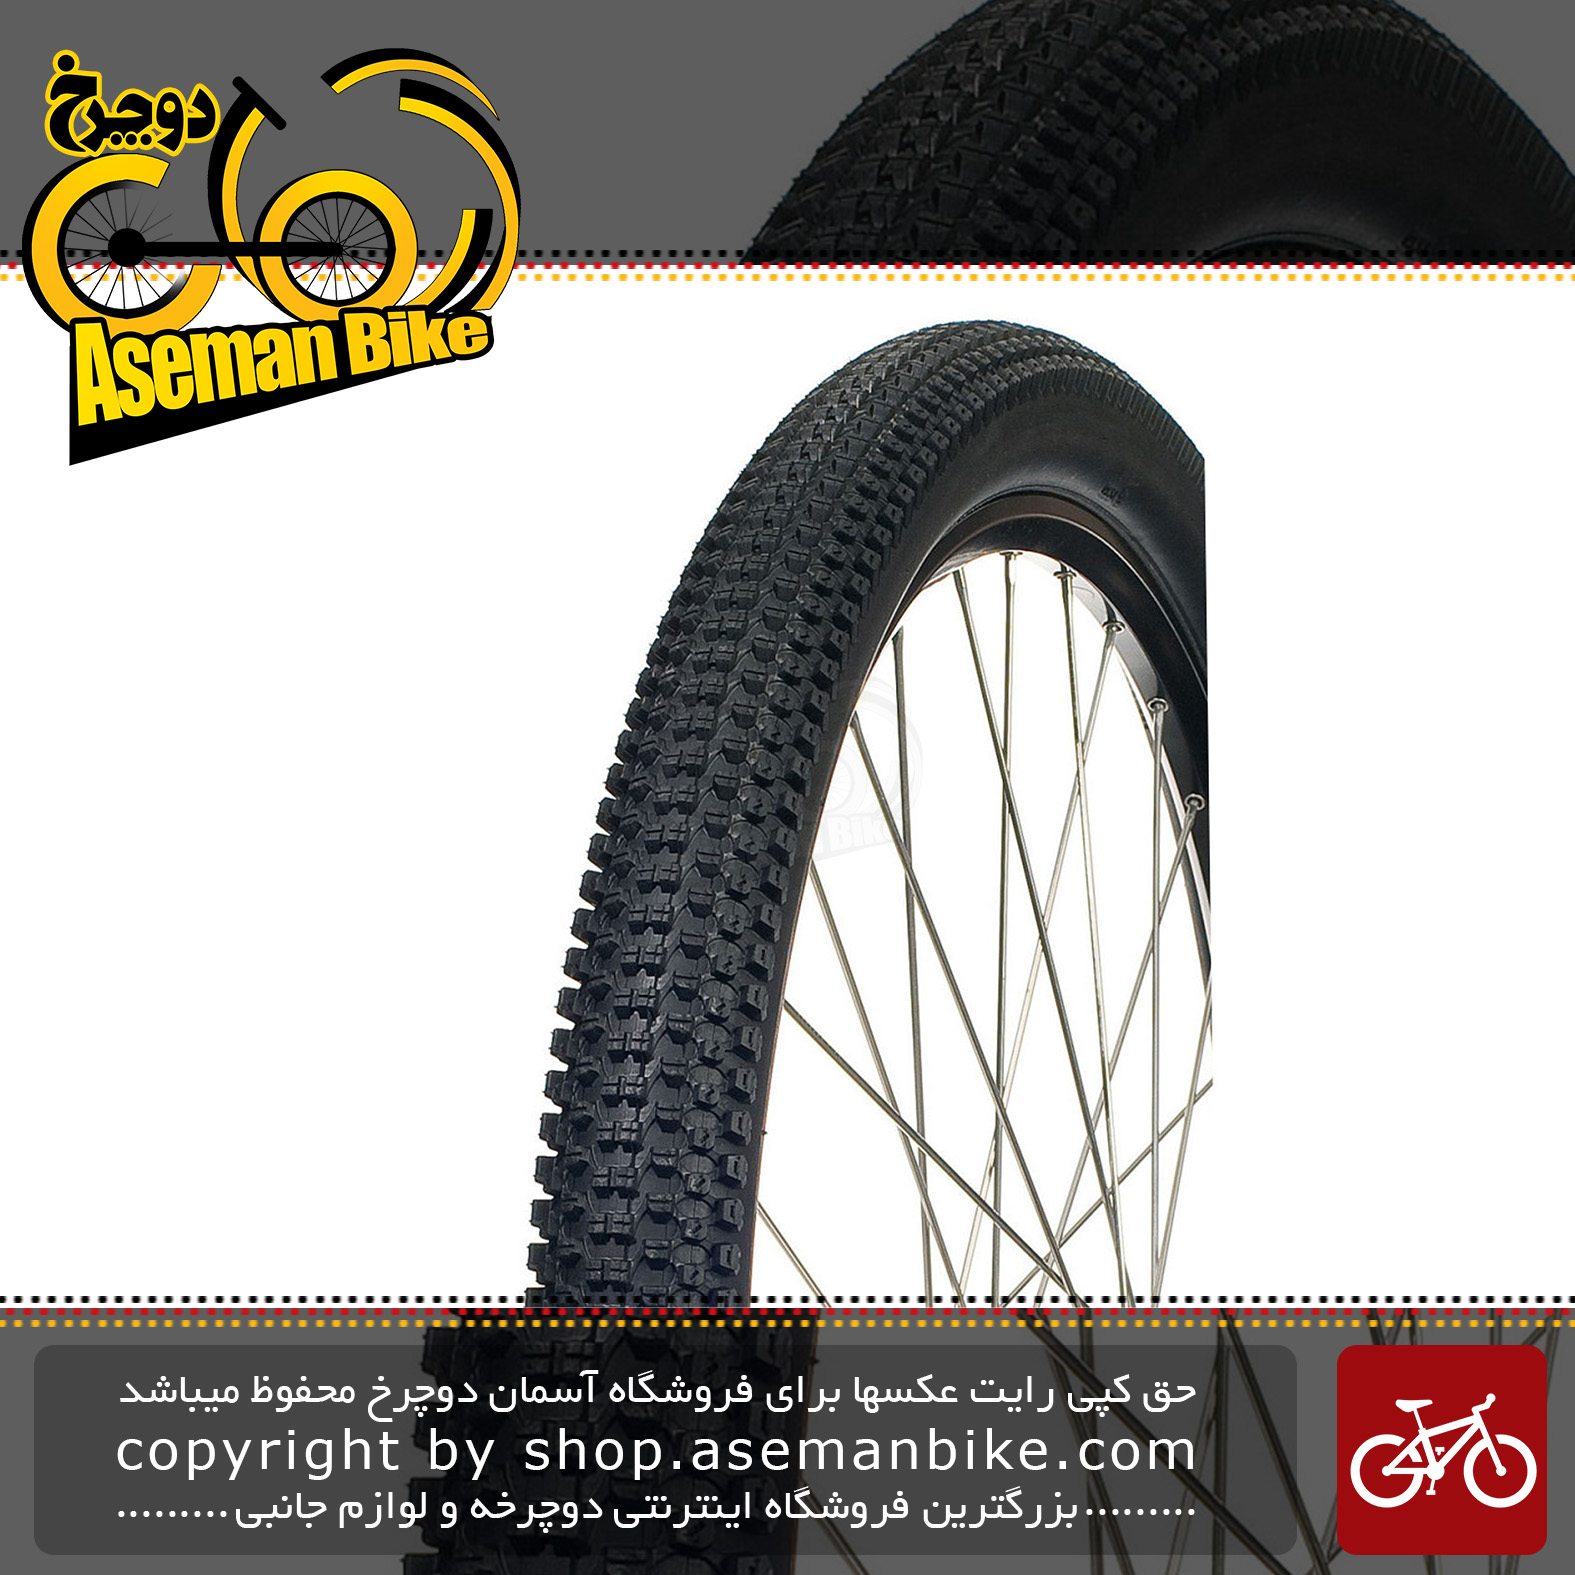 لاستیک تایر دوچرخه کوهستان ابریشمی برند وندا کینگ سایز 26 با پهنای 2.35 اینچ Wanda King MTB Tire Size 26×2.35 Inch